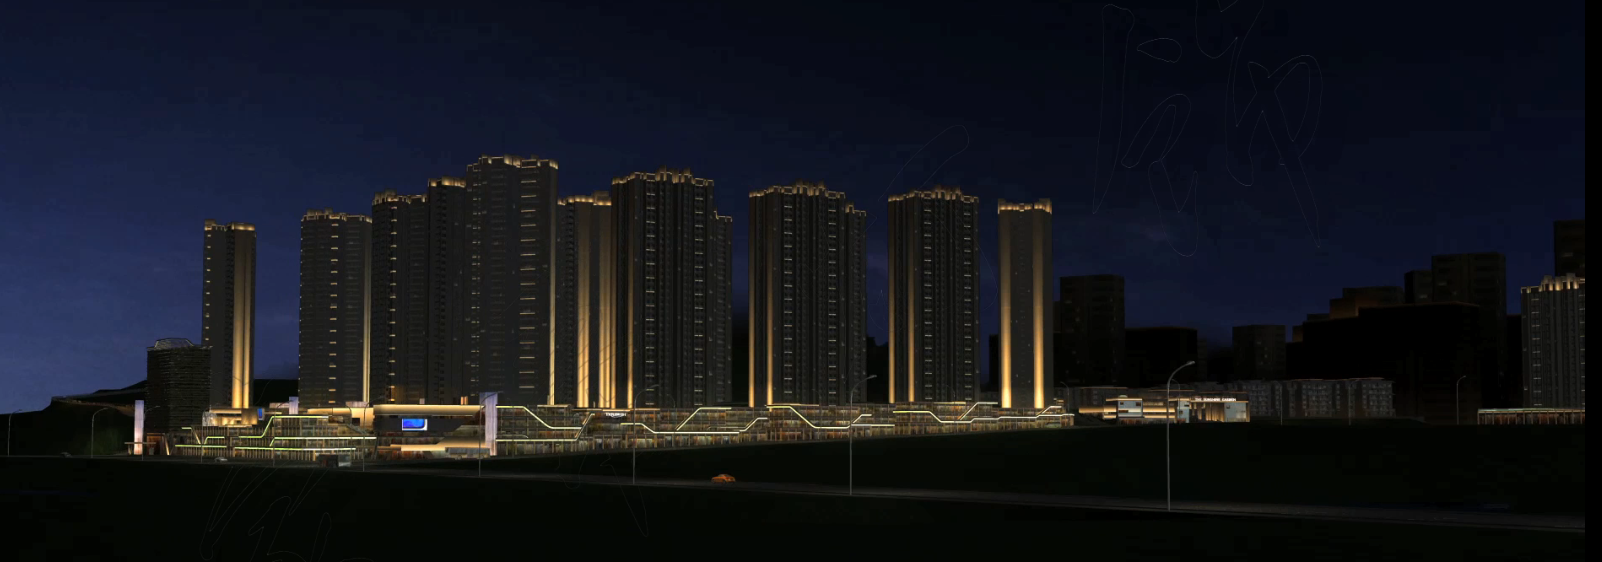 城市建筑群燈飾規劃3